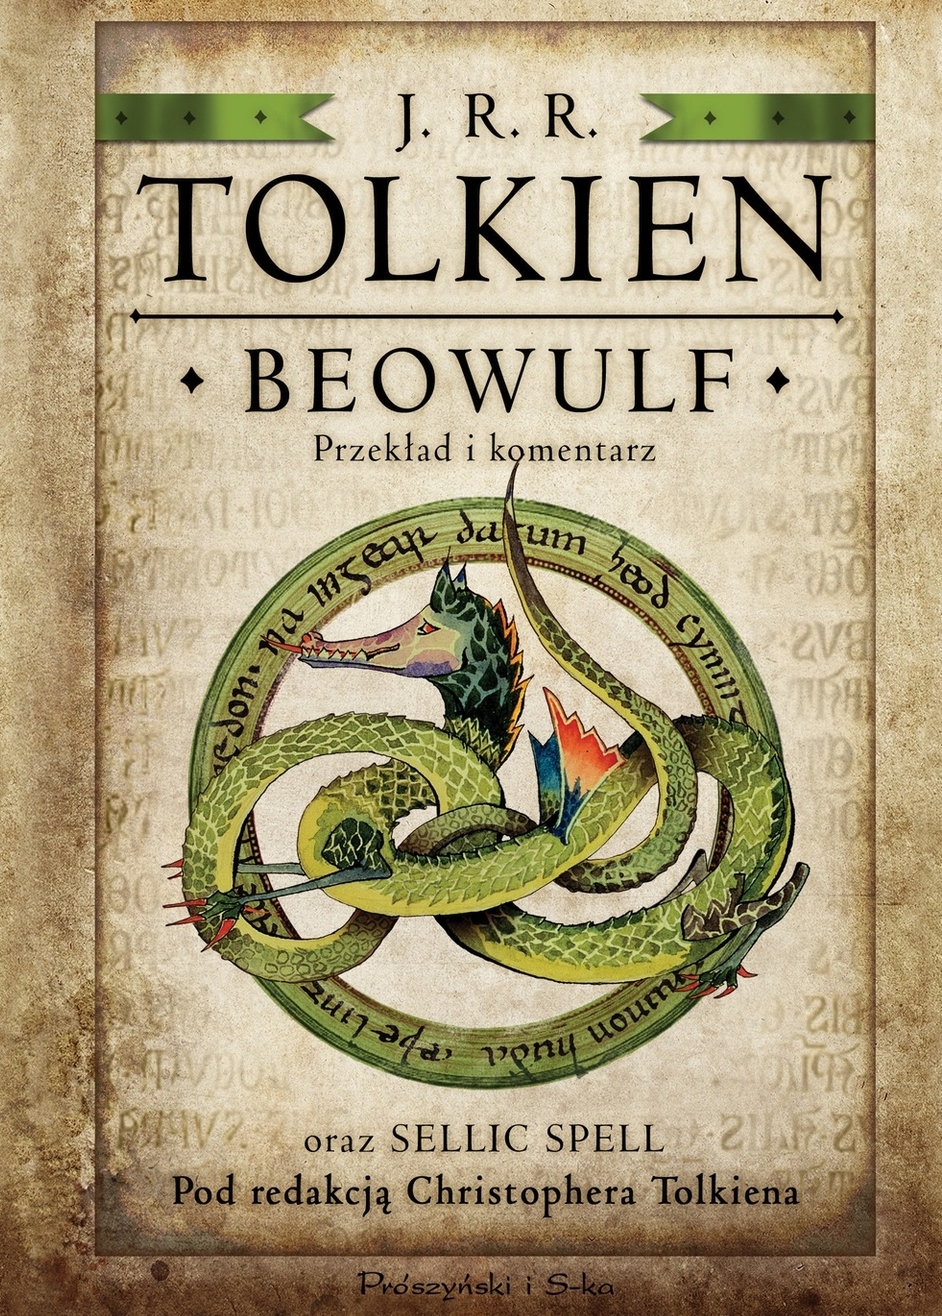 J.R.R. Tolkien, ?Beowulf?- przekład słynnego angielskiego dzieła już w sprzedaży